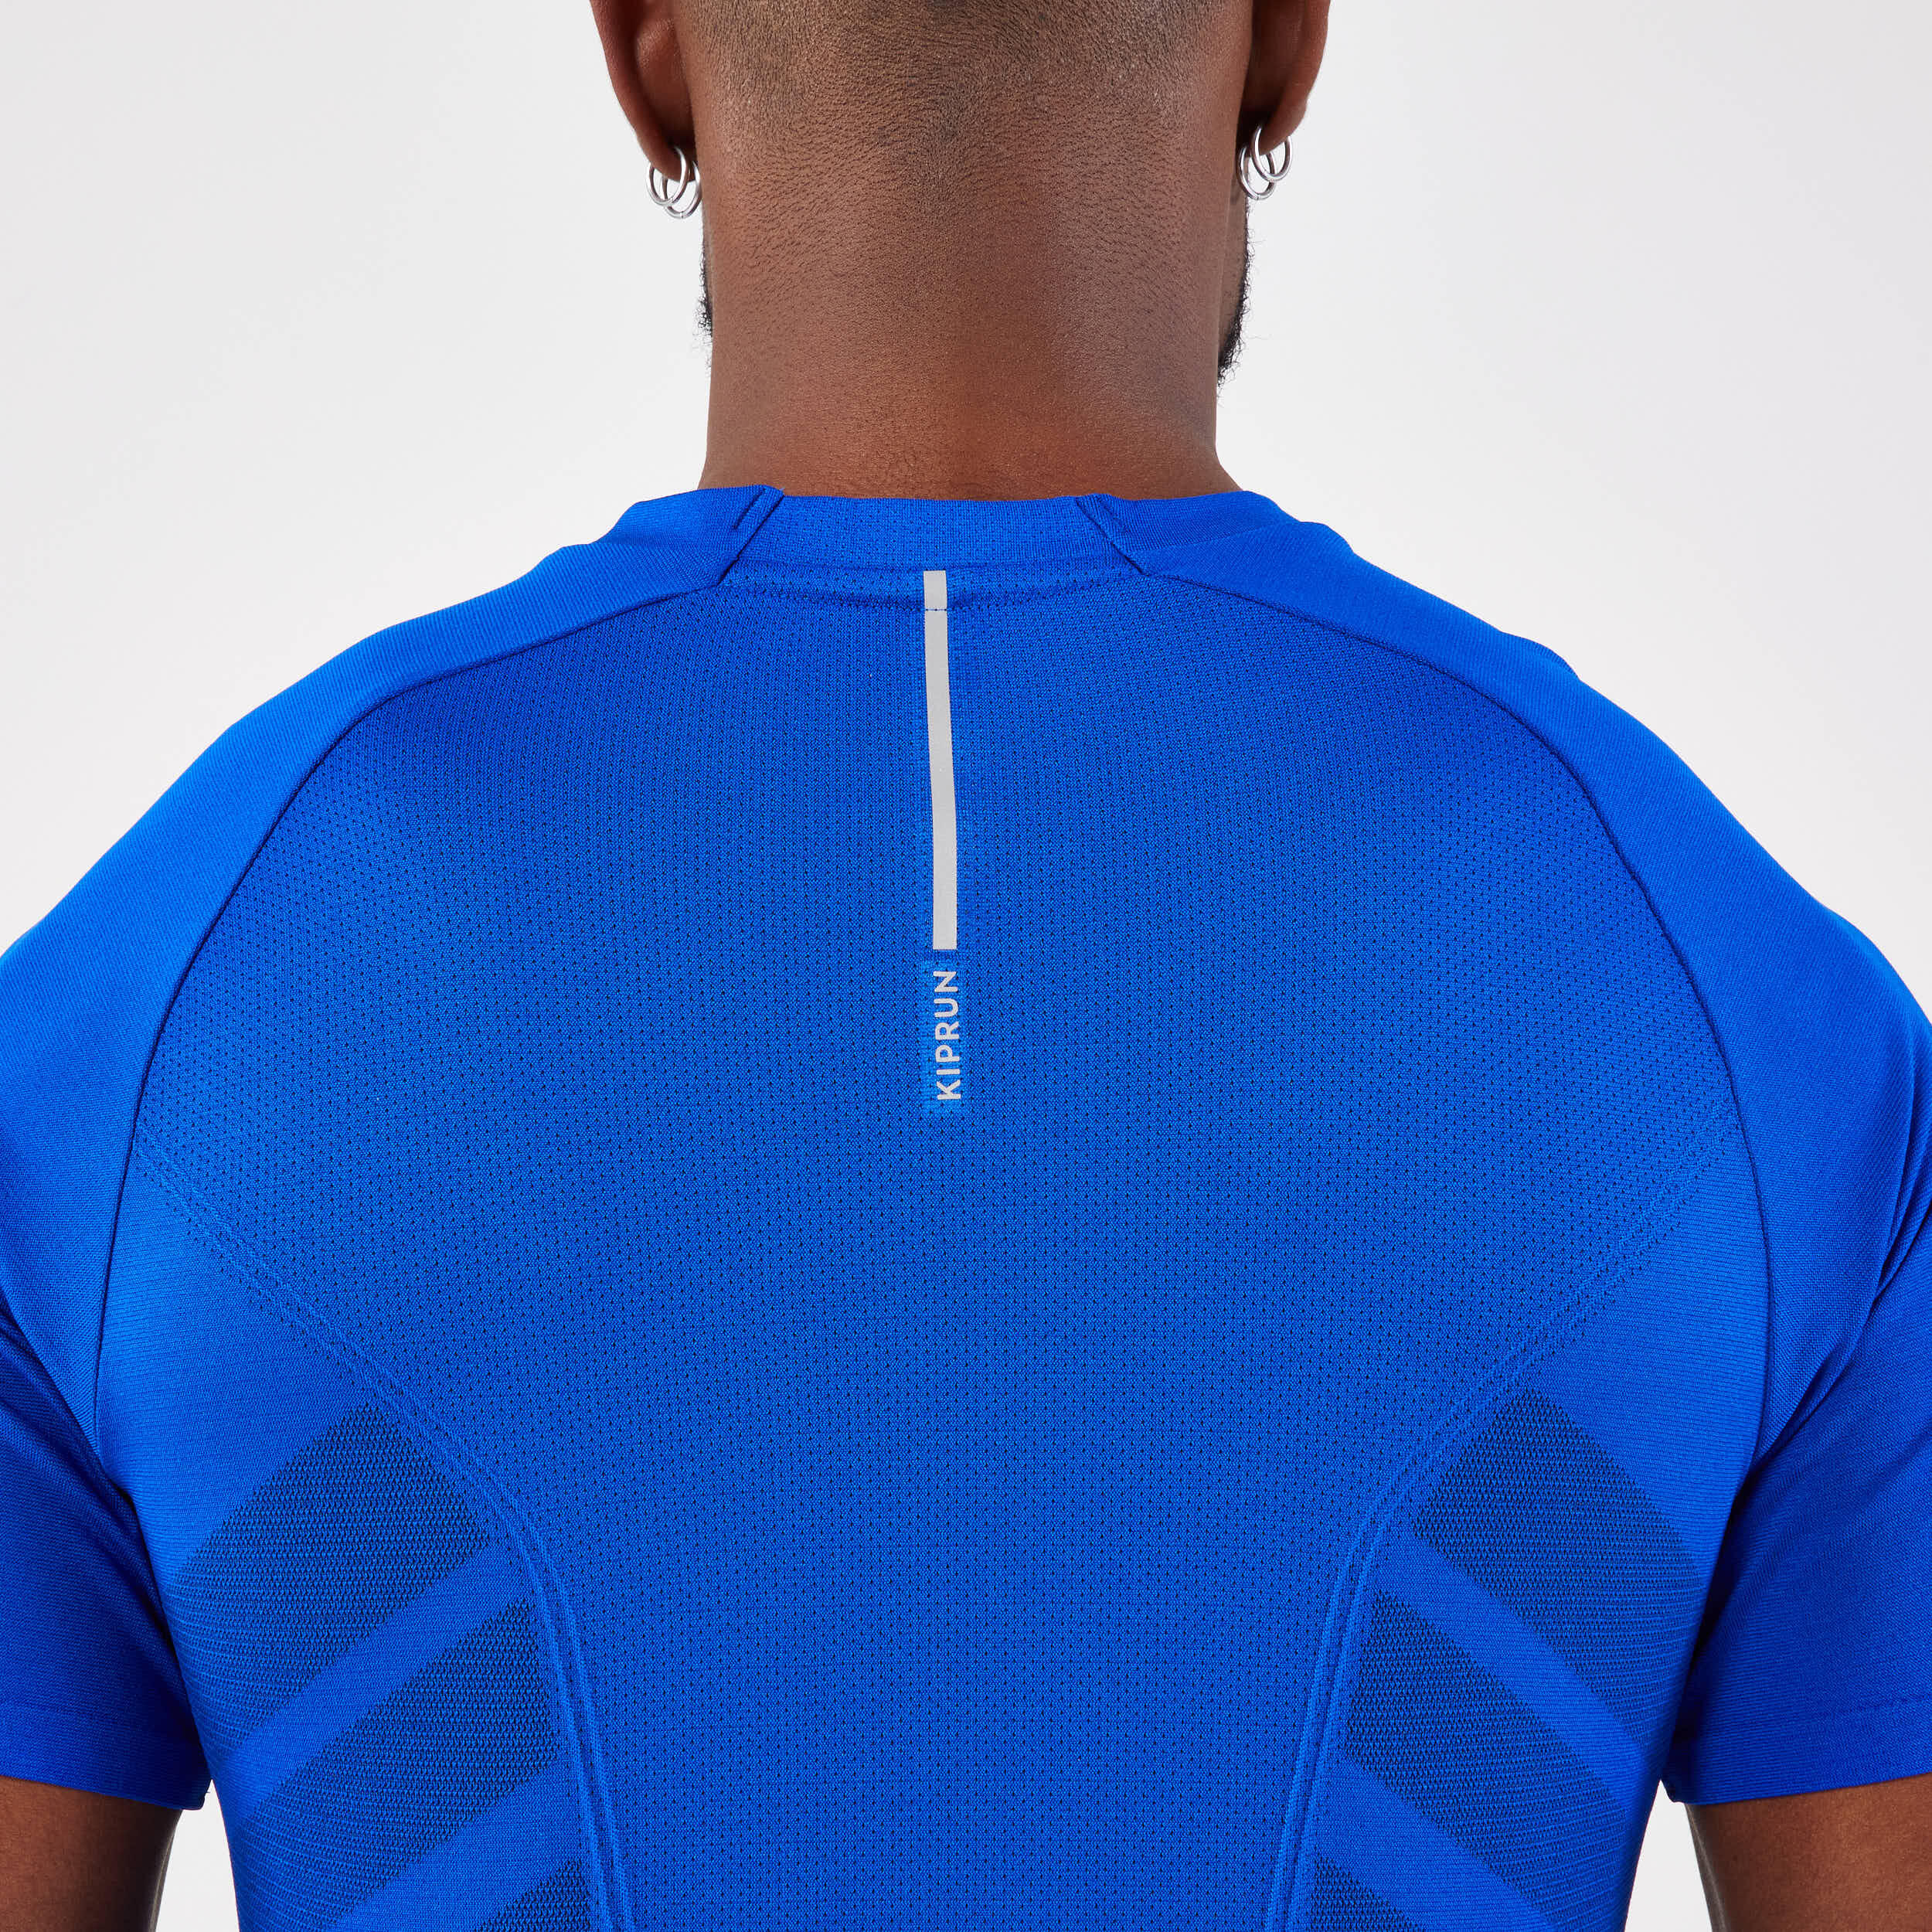 KALENJI Ekiden Men Running T Shirt by Decathlon - Blue - (M